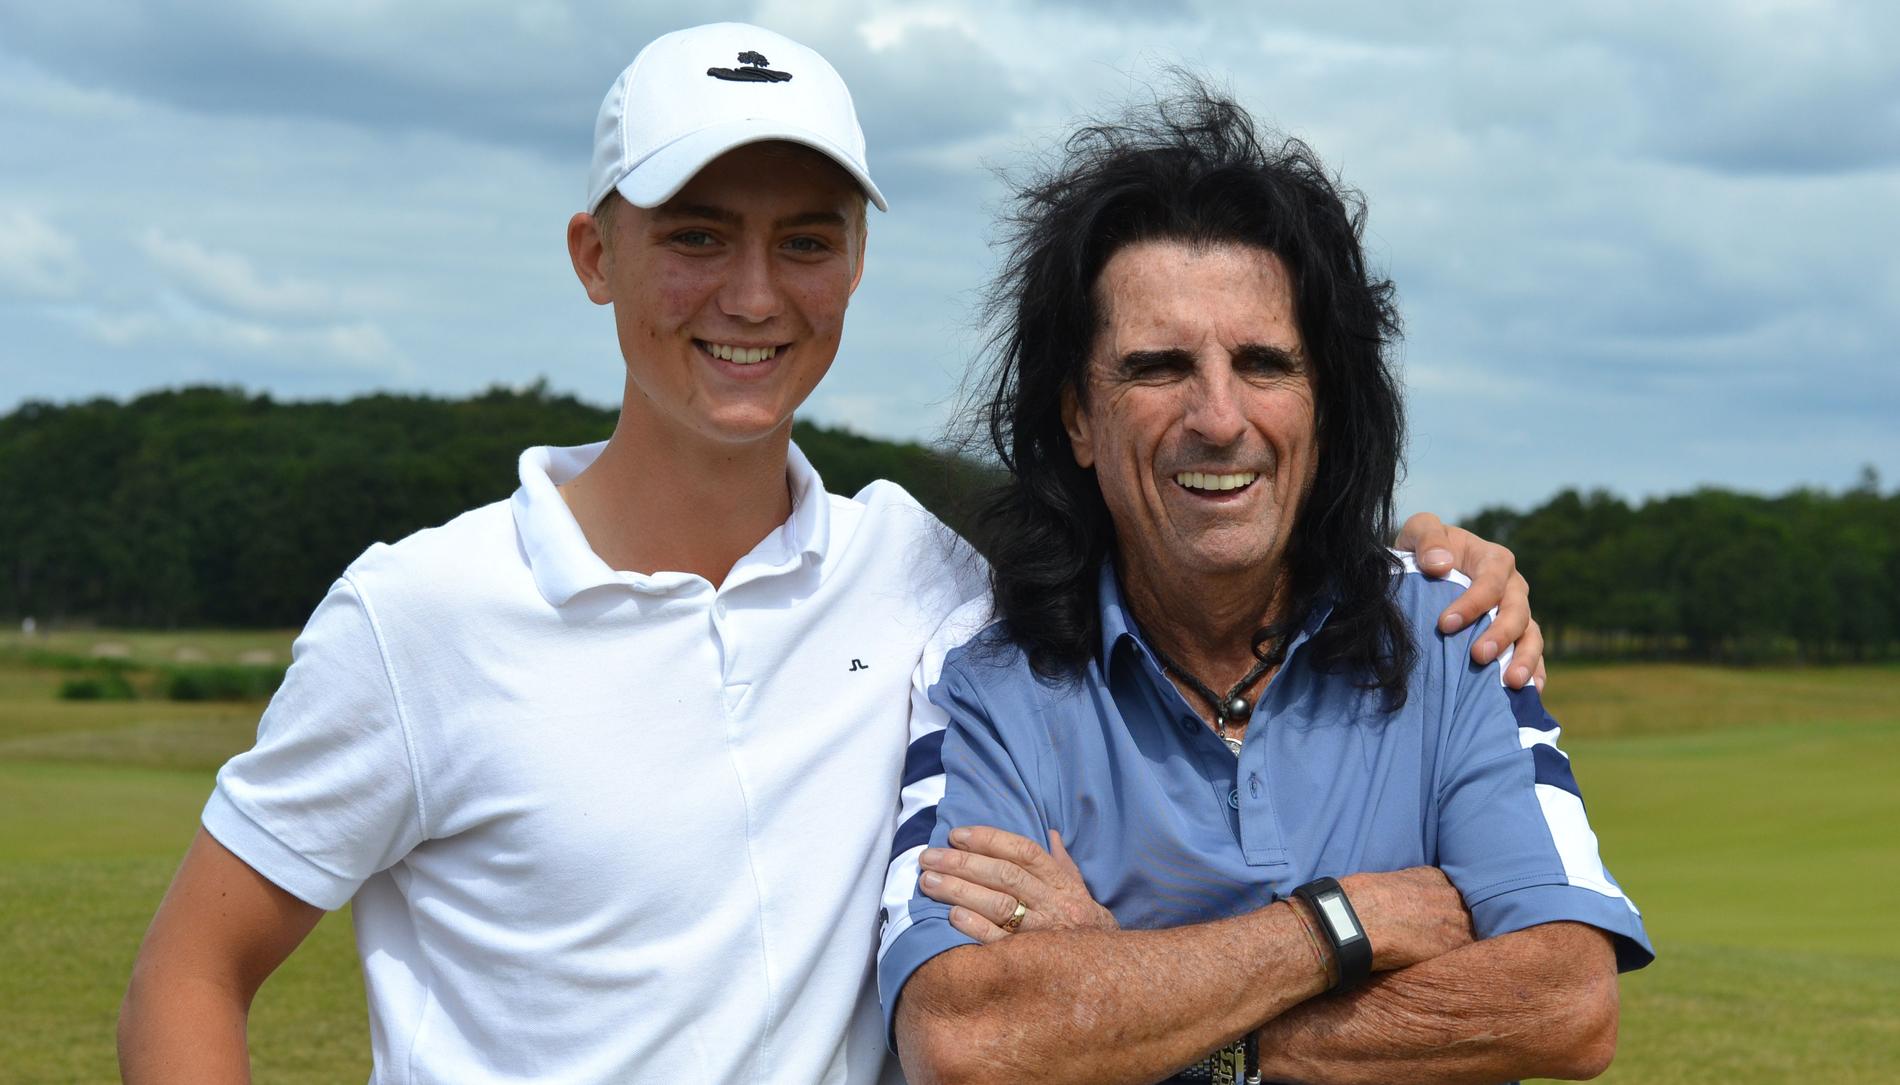 Alice Cooper gick en golfrunda tillsammans med Oscar Teiffel, 17, i Kungsbacka. ”Han hade bra tryck i bollen”, säger Oscar till Nöjesbladet.